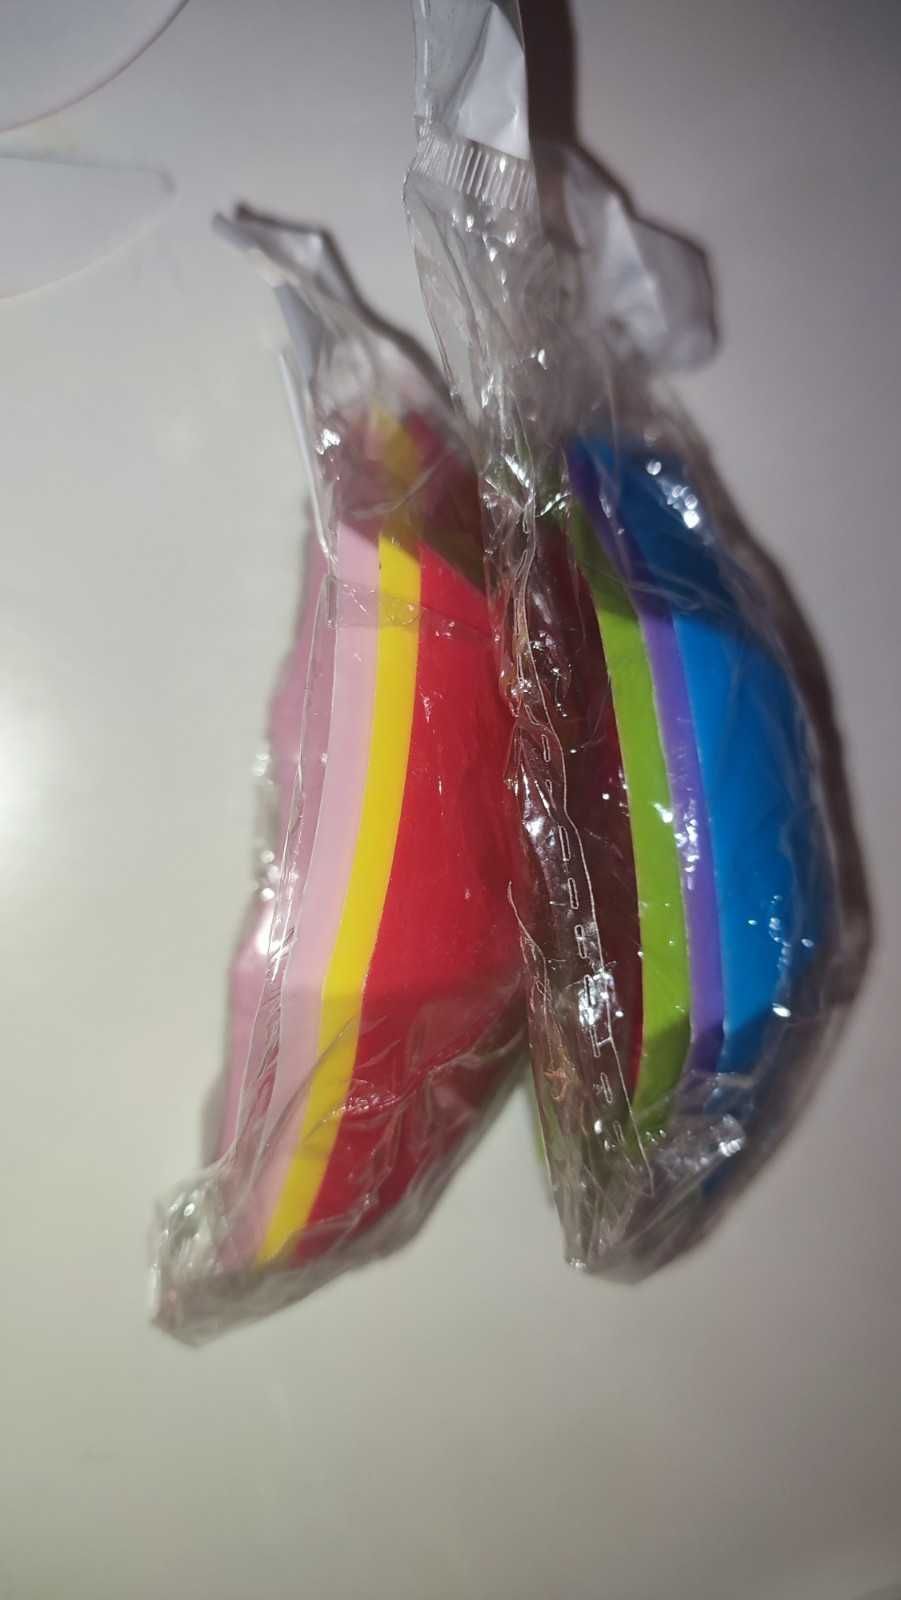 Carlige agatatori umbrelute colorate - 9 bucati